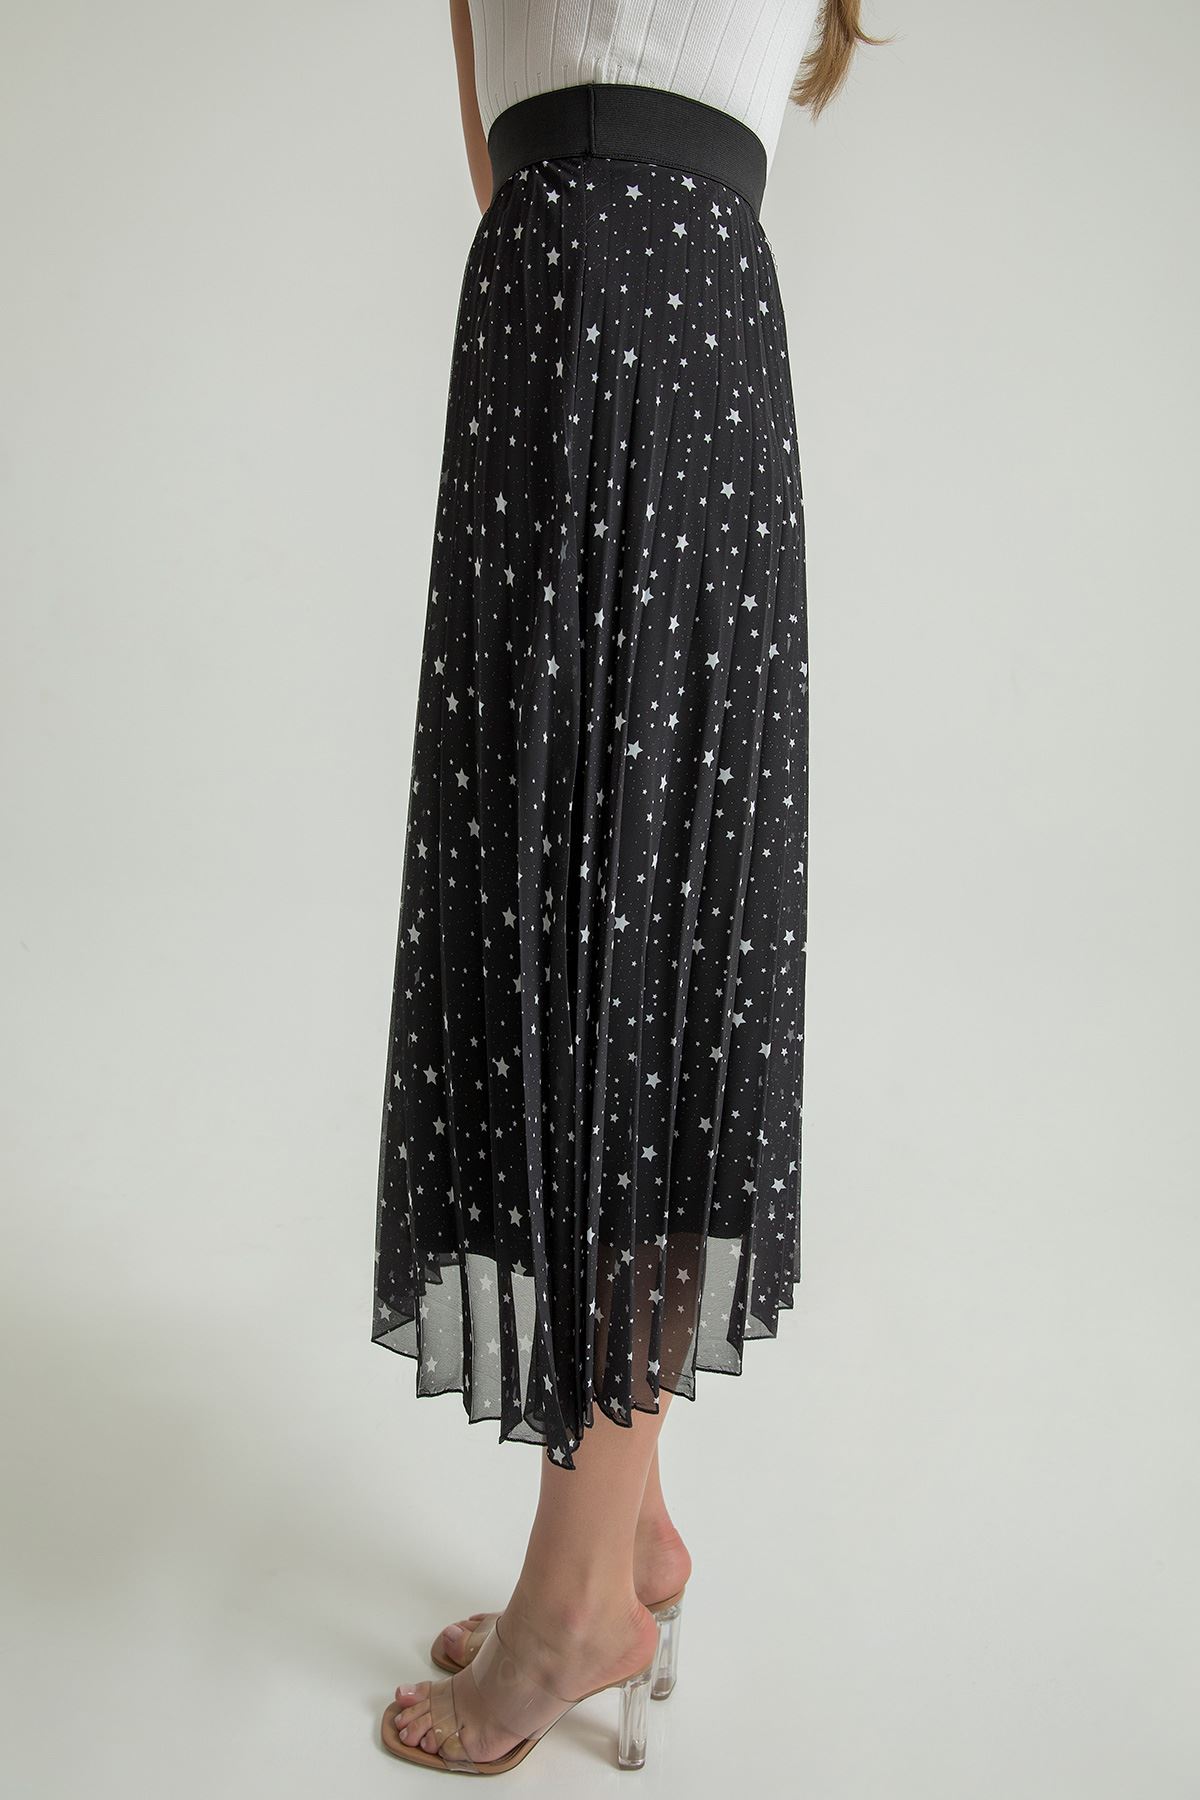 Chiffon Fabric Midi Comfy Fit Star Print Women'S Skirt - Black